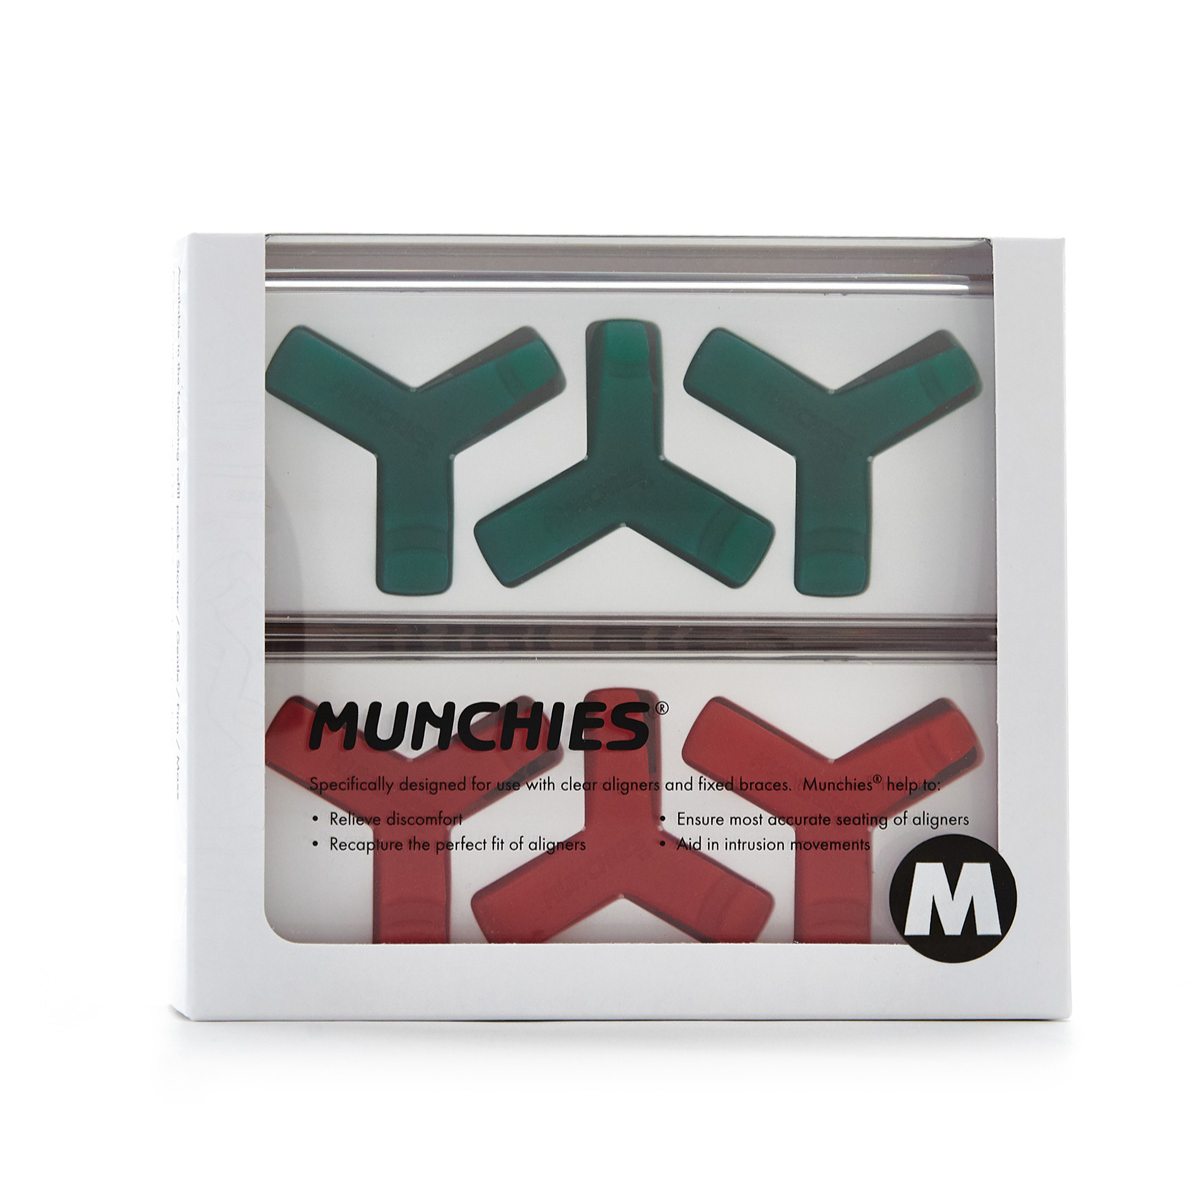 Munchies® Maxx Refill Pack